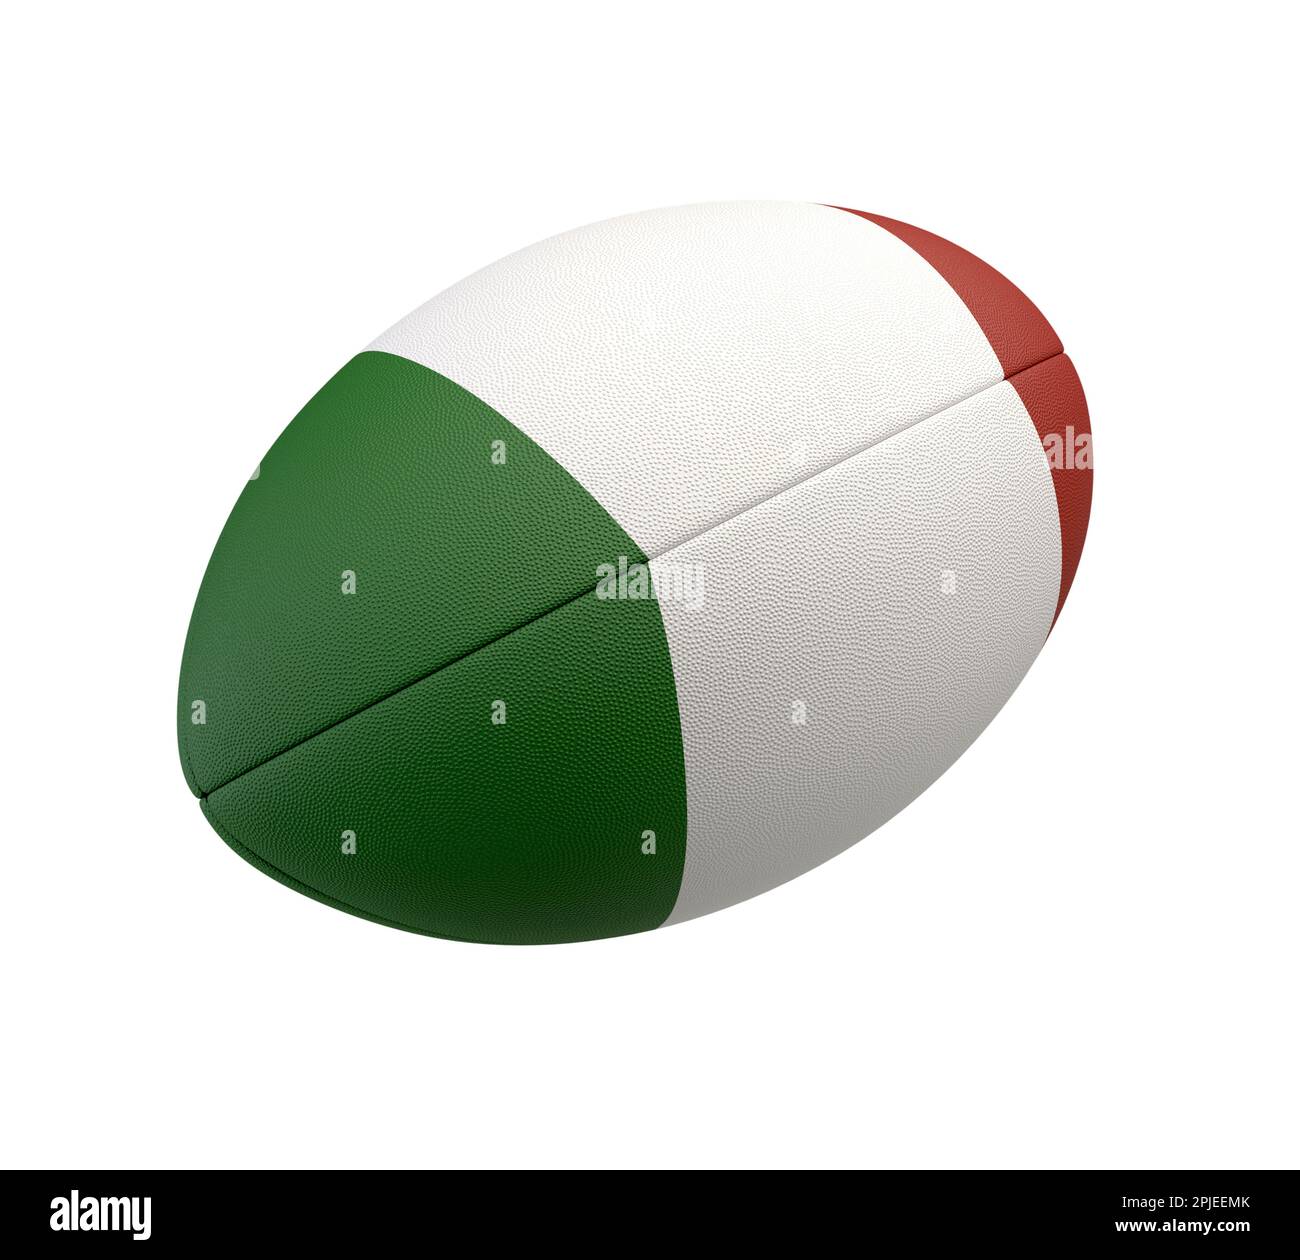 Ein weiß strukturierter Rugbyball mit Farbdesign, das die italienische Nationalflagge auf einem isolierten Hintergrund darstellt - 3D-Rendering Stockfoto